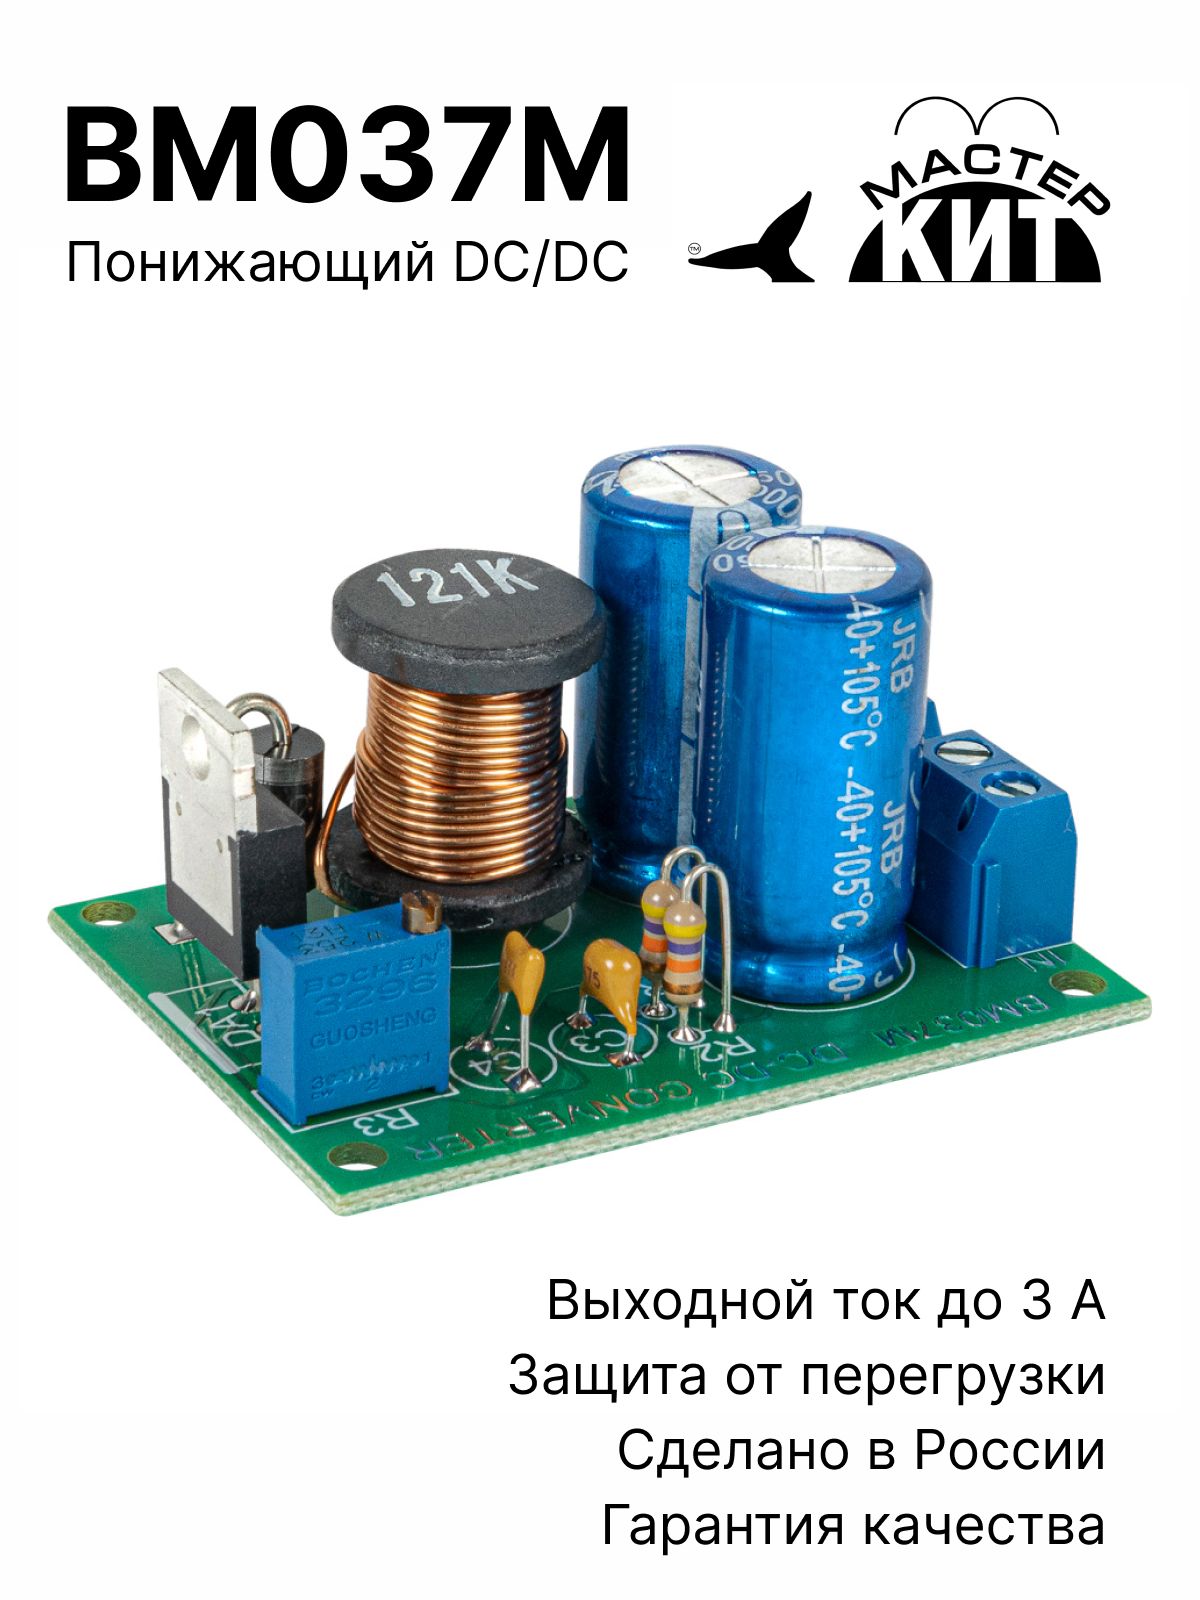 ИмпульсныйрегулируемыйпонижающийDC/DCпреобразовательпостоянногонапряжения(1.2-37В,3.0А),стабилизатор,конвертер,источникпитания/ВМ037ММастерКит